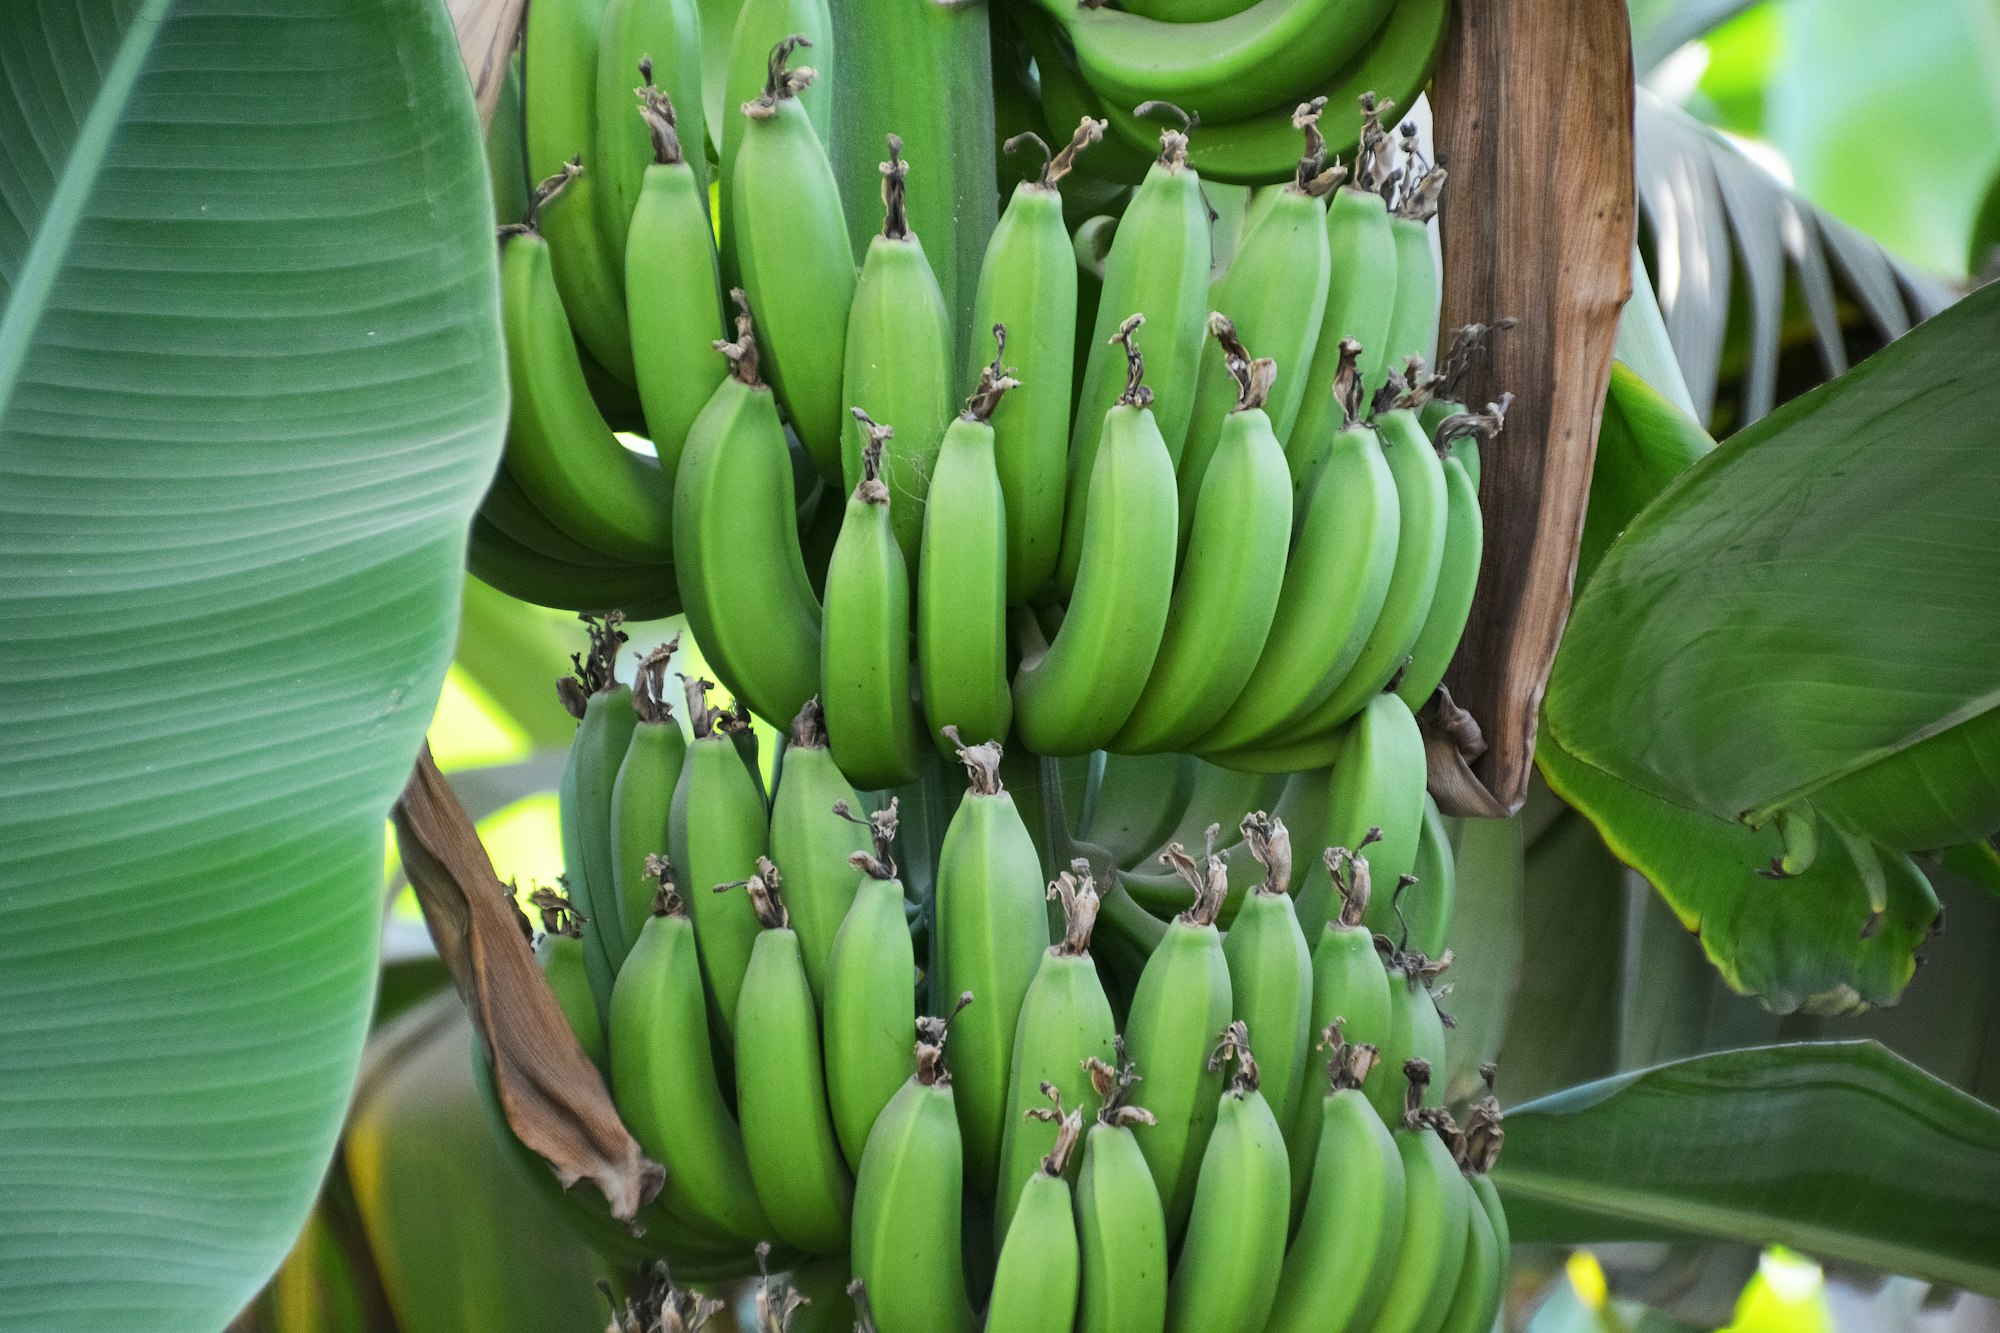 그린 바나나가 과식을 예방할 수 있을까요?